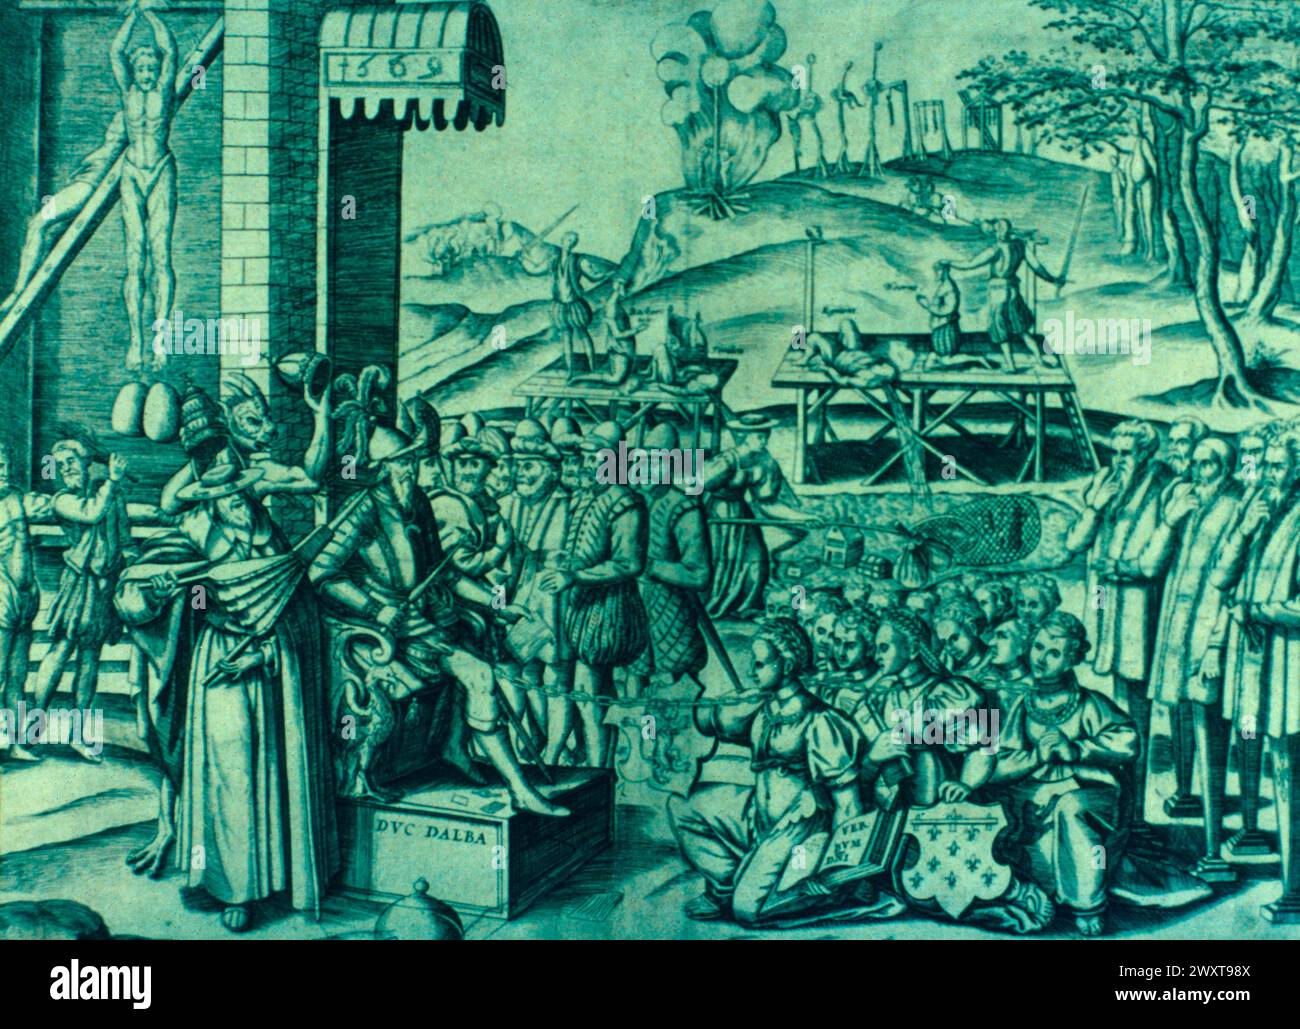 Le duc d'Alva persécute les protestants des pays-Bas, illustration, XVIe siècle Banque D'Images